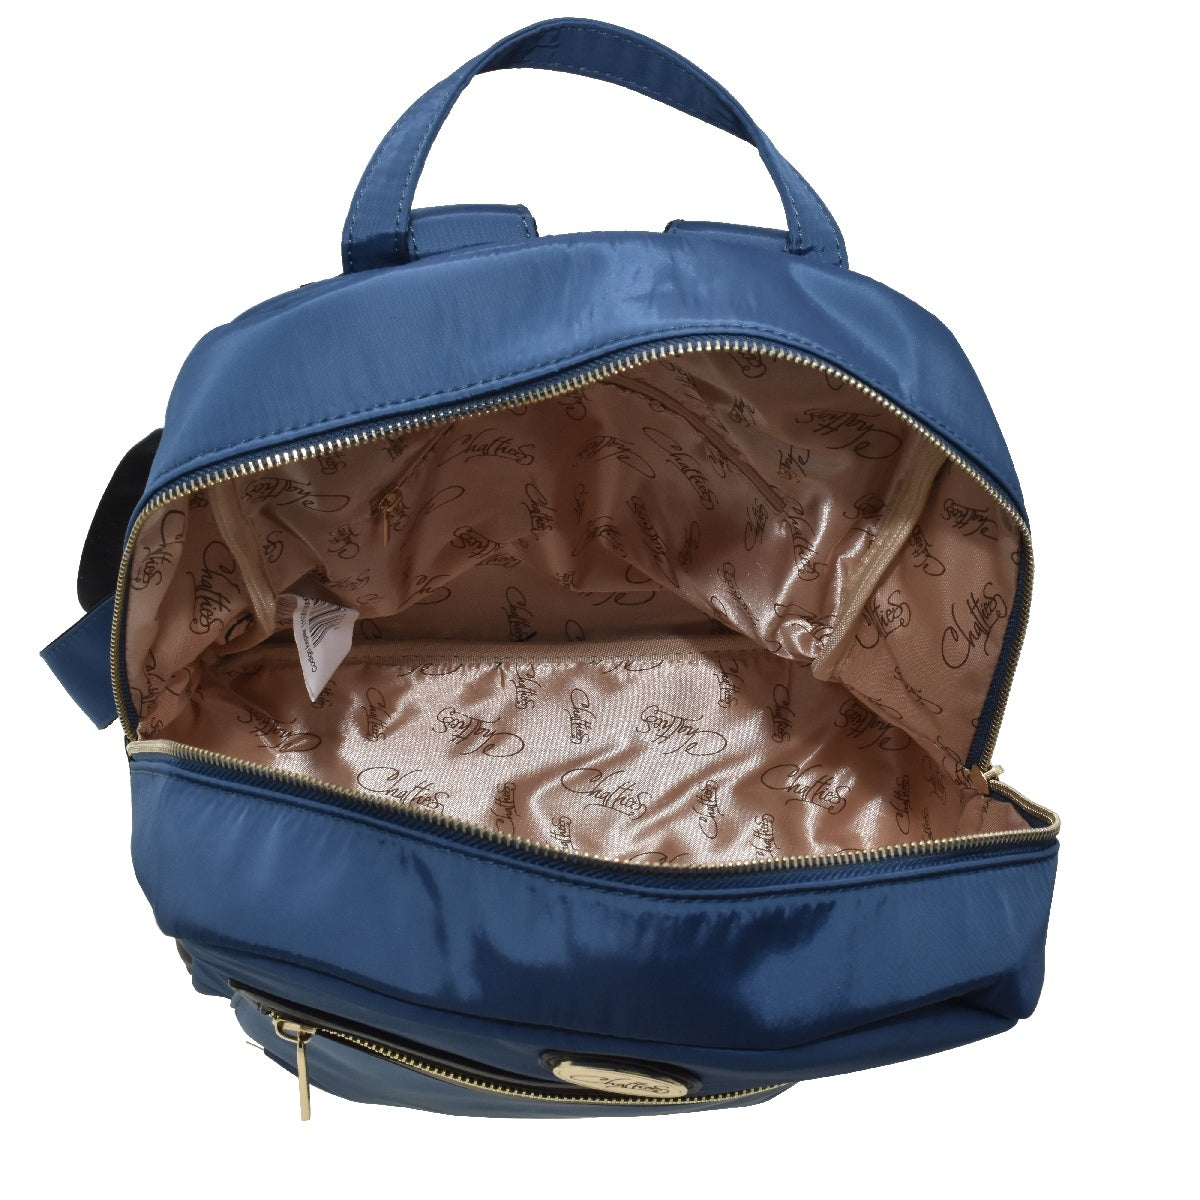 Backpack [Chatties] de nylon con bolsa frontal color navy